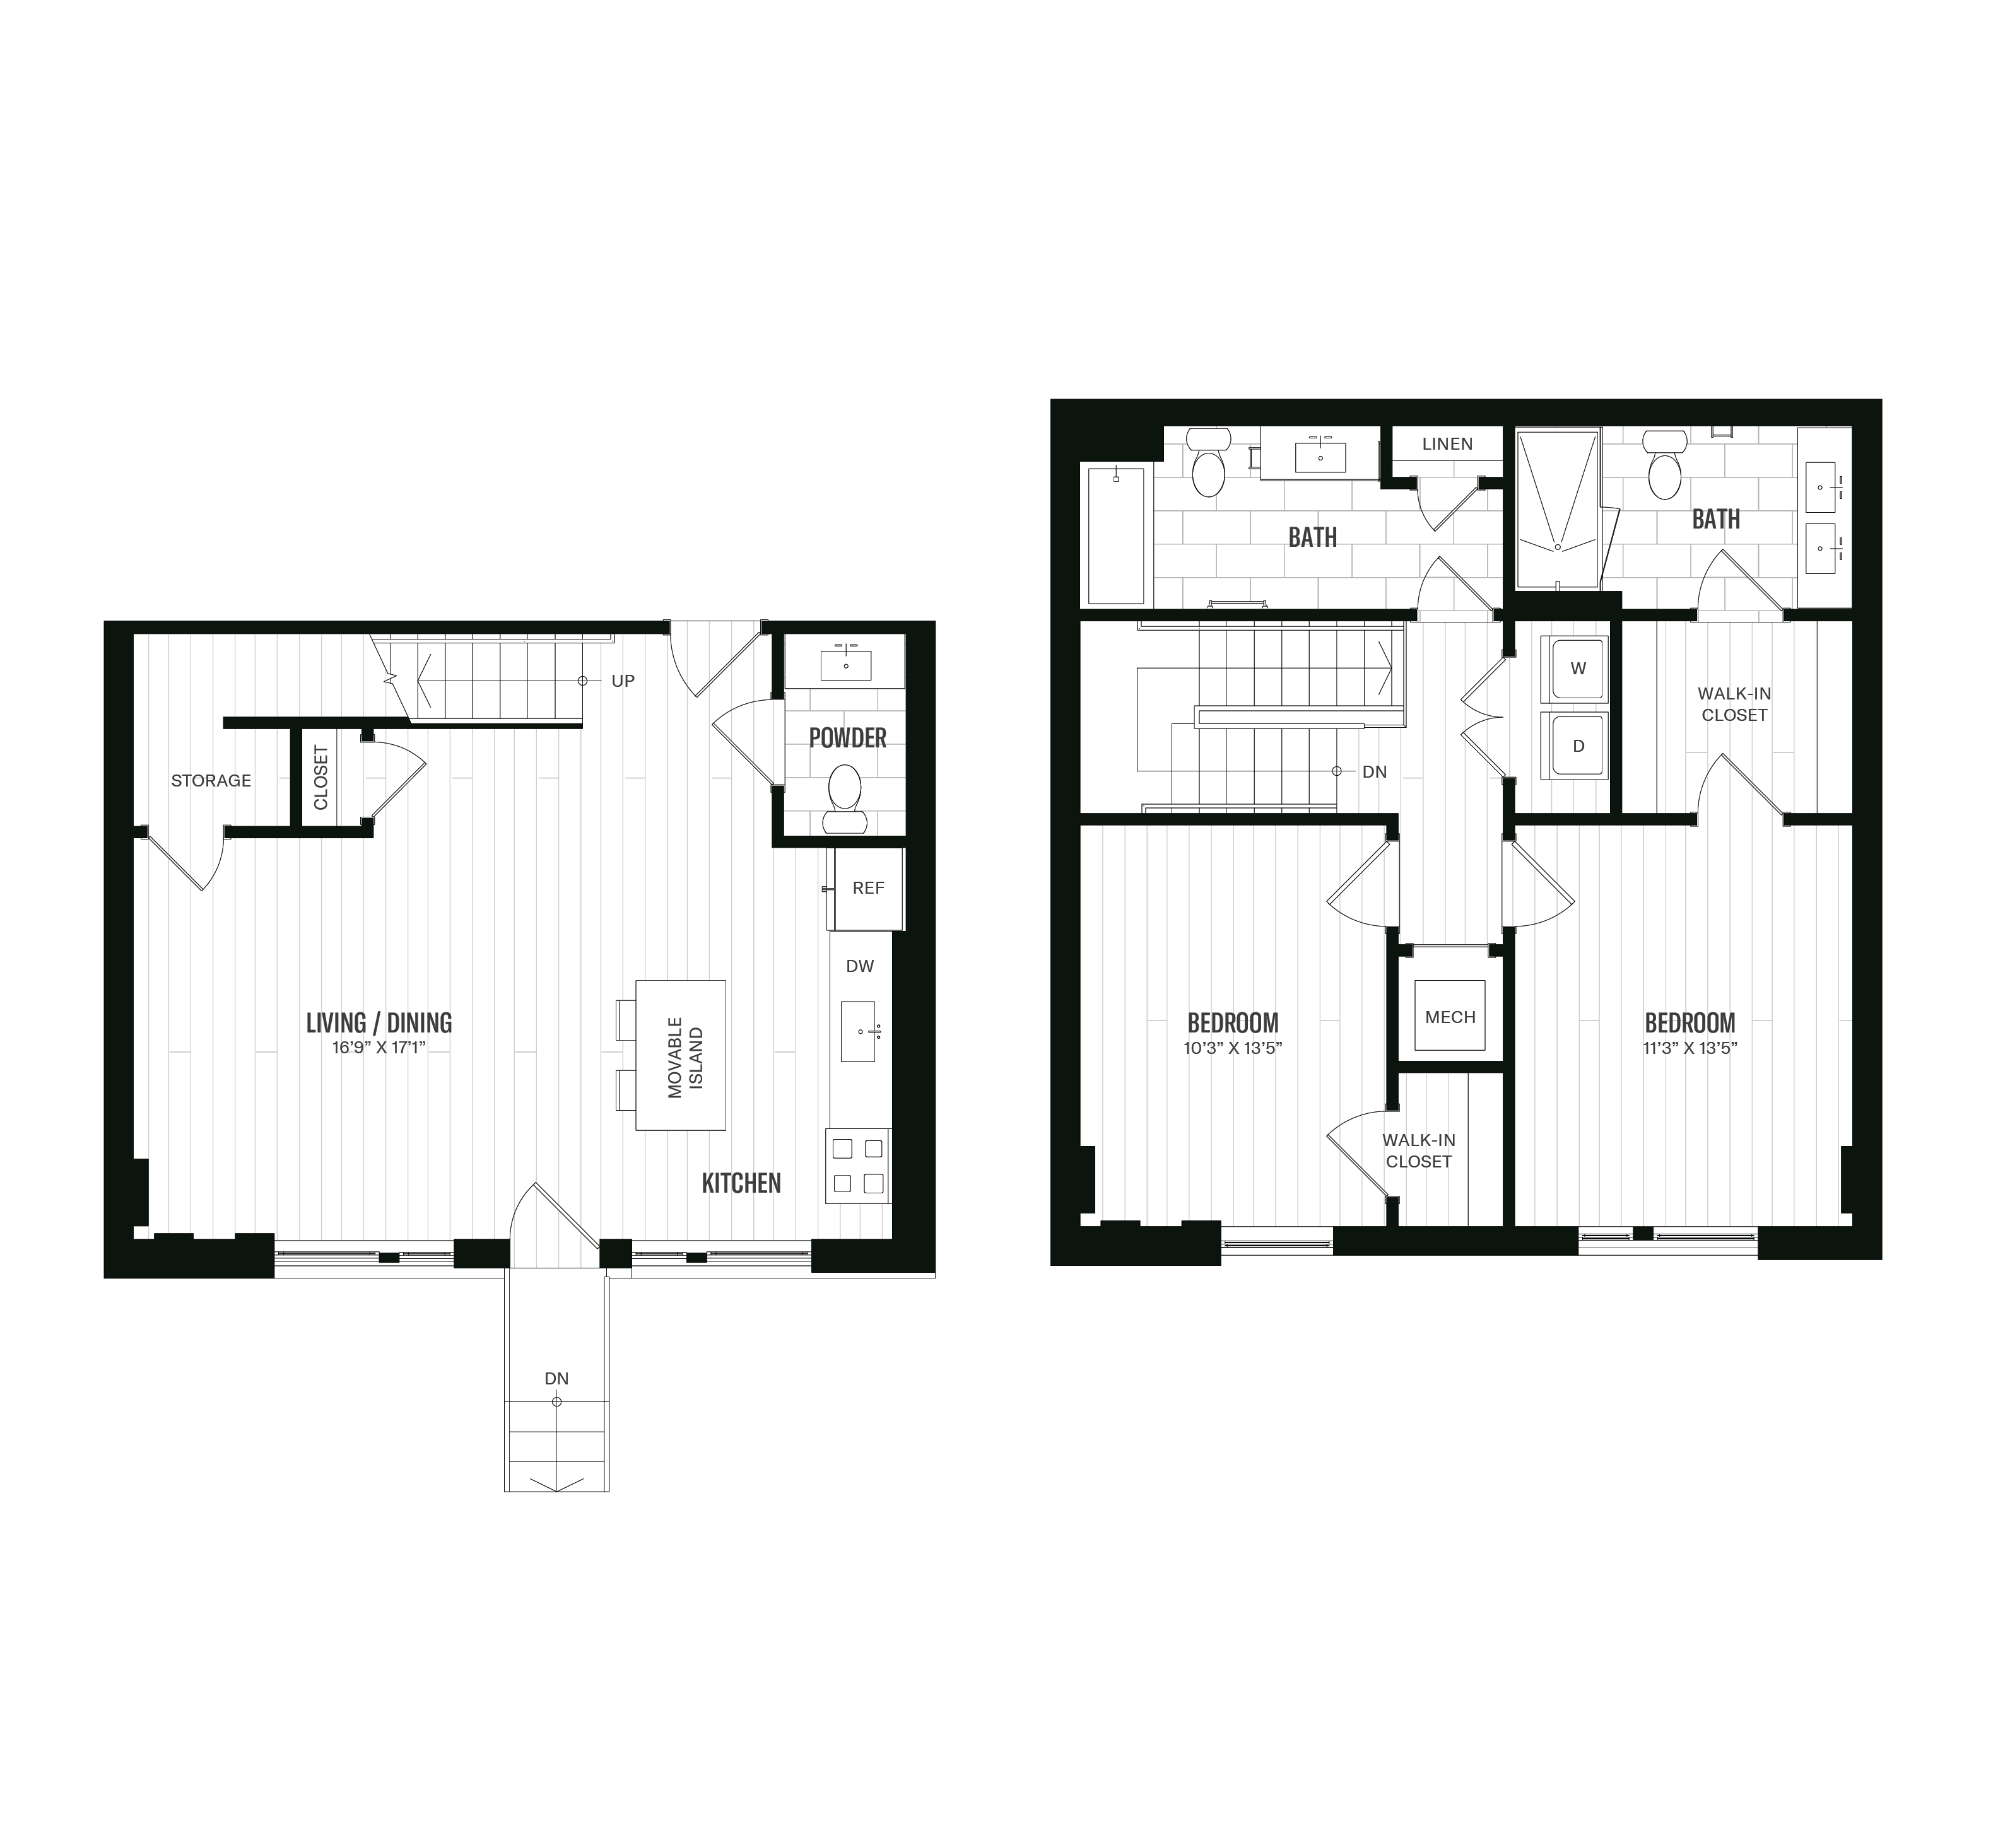 Floorplan image of unit 160